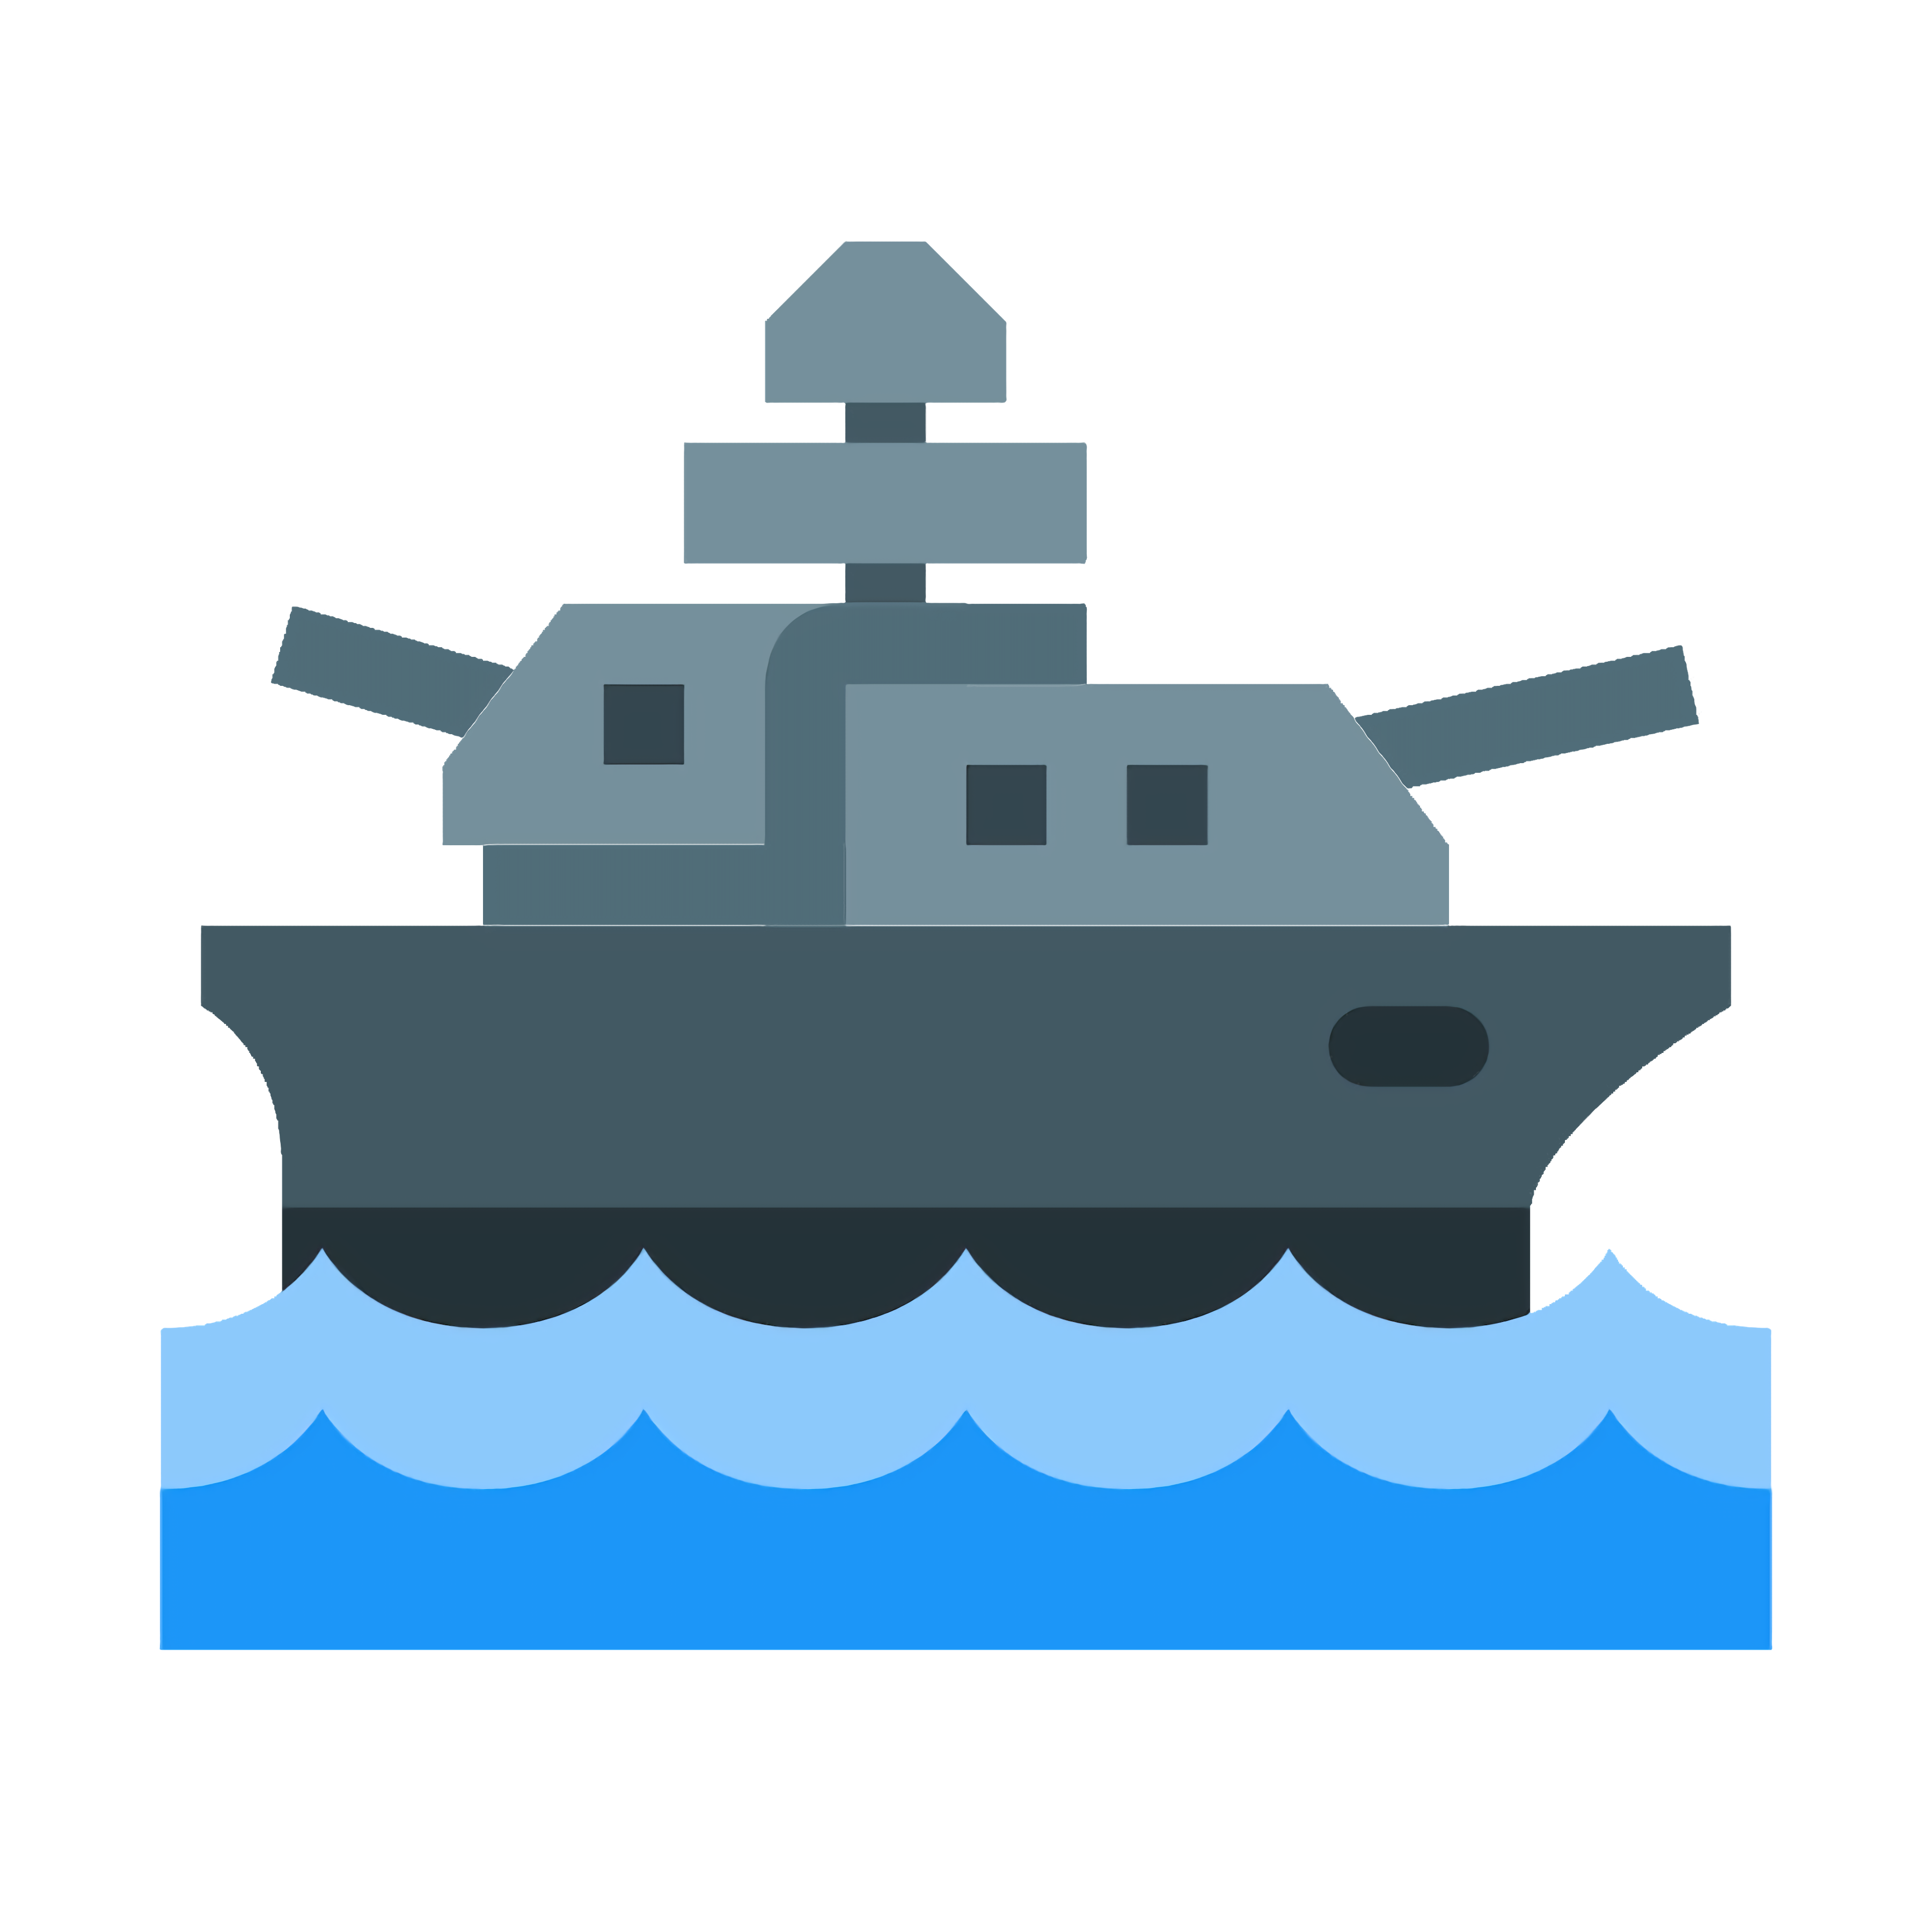 free online battleships game